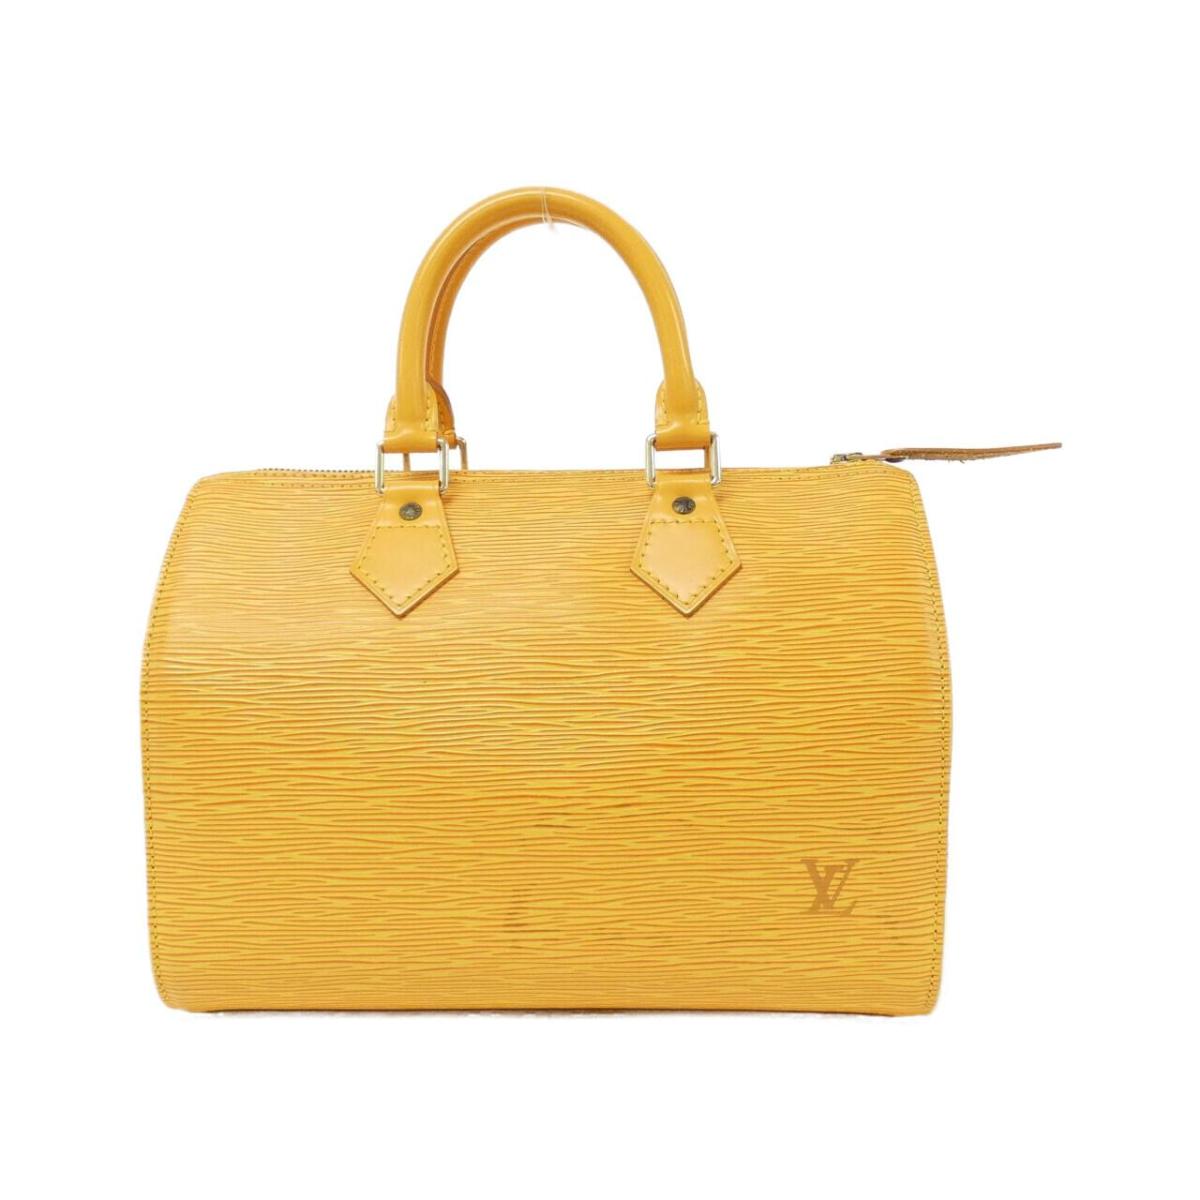 Louis Vuitton Epi Speedy 25 M43019 Boston Bag